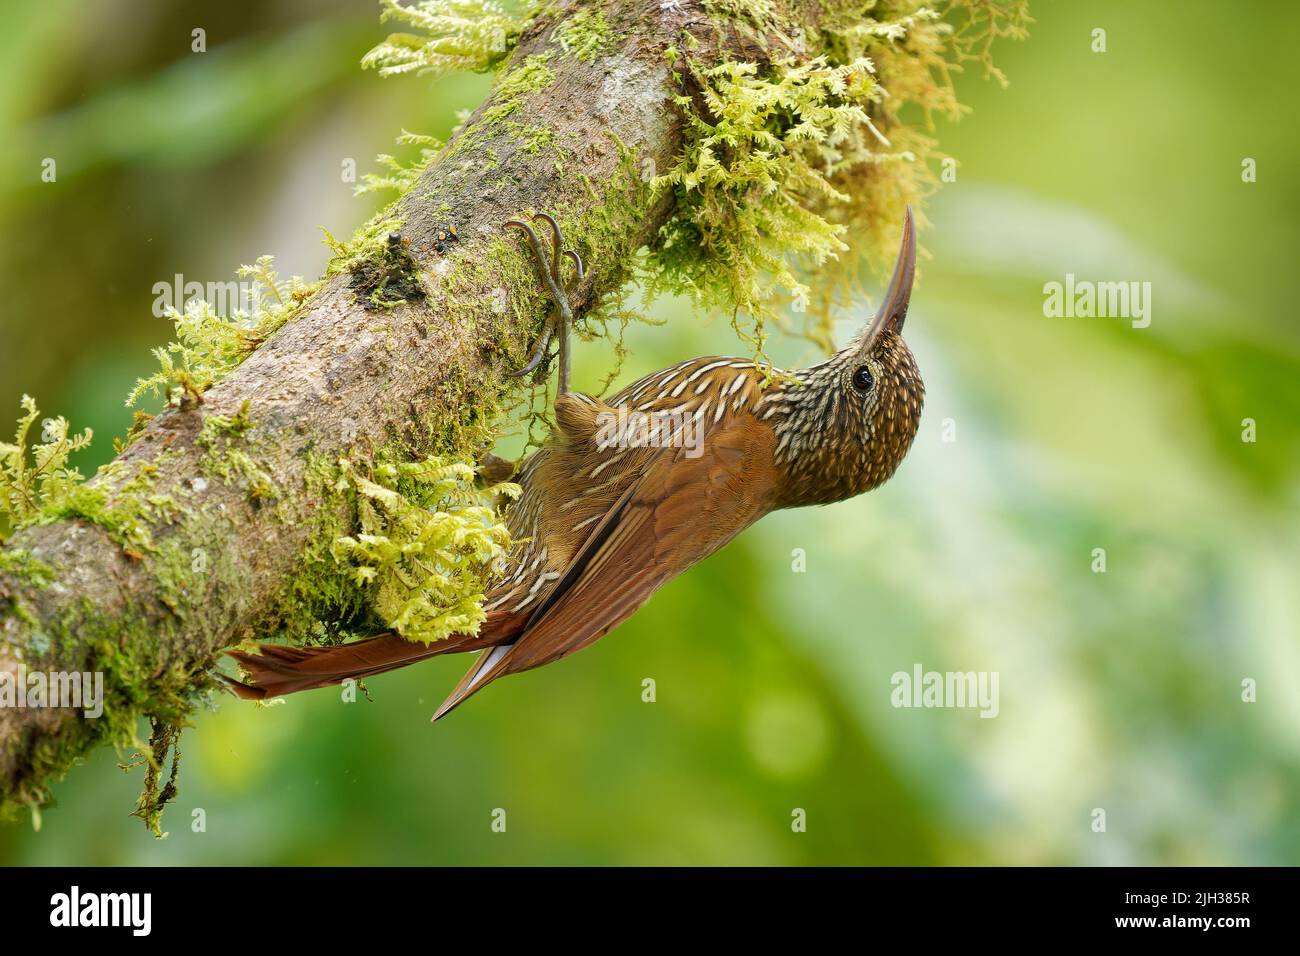 Montane Woodsuperriduttore - Lepitocolaptes lacrymiger uccello perching sottofamiglia Dendrocolaptinae della famiglia degli ovenbird Furnariidae, trovato in Bolivia, Colombia, E. Foto Stock